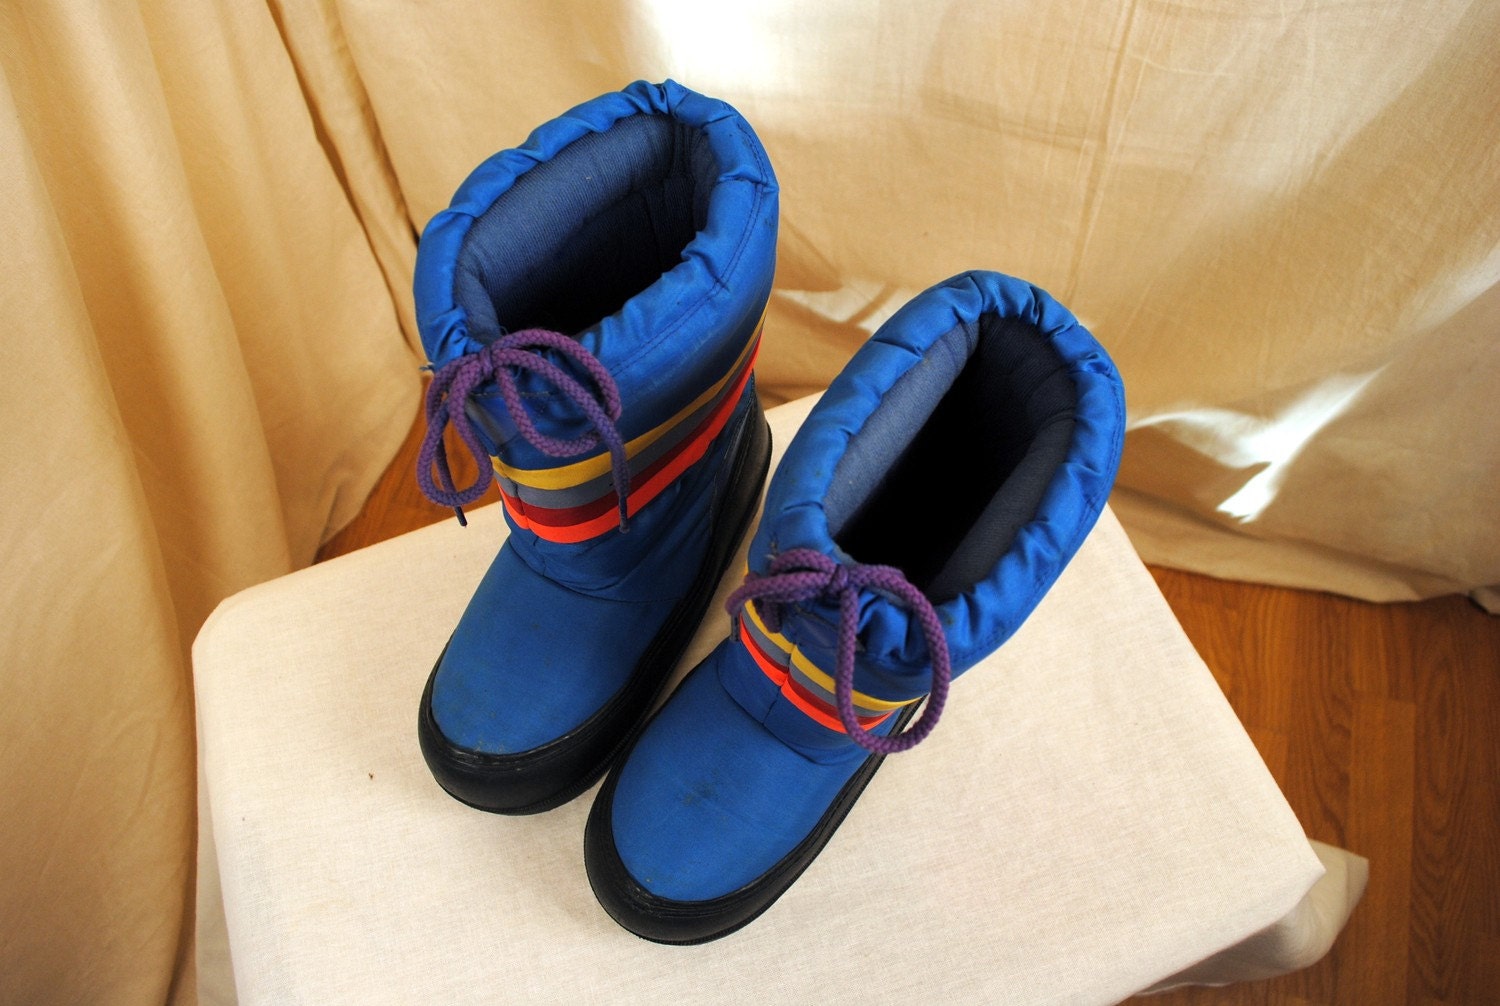 Vintage 80s Rainbow Moon Boots Size 7 8